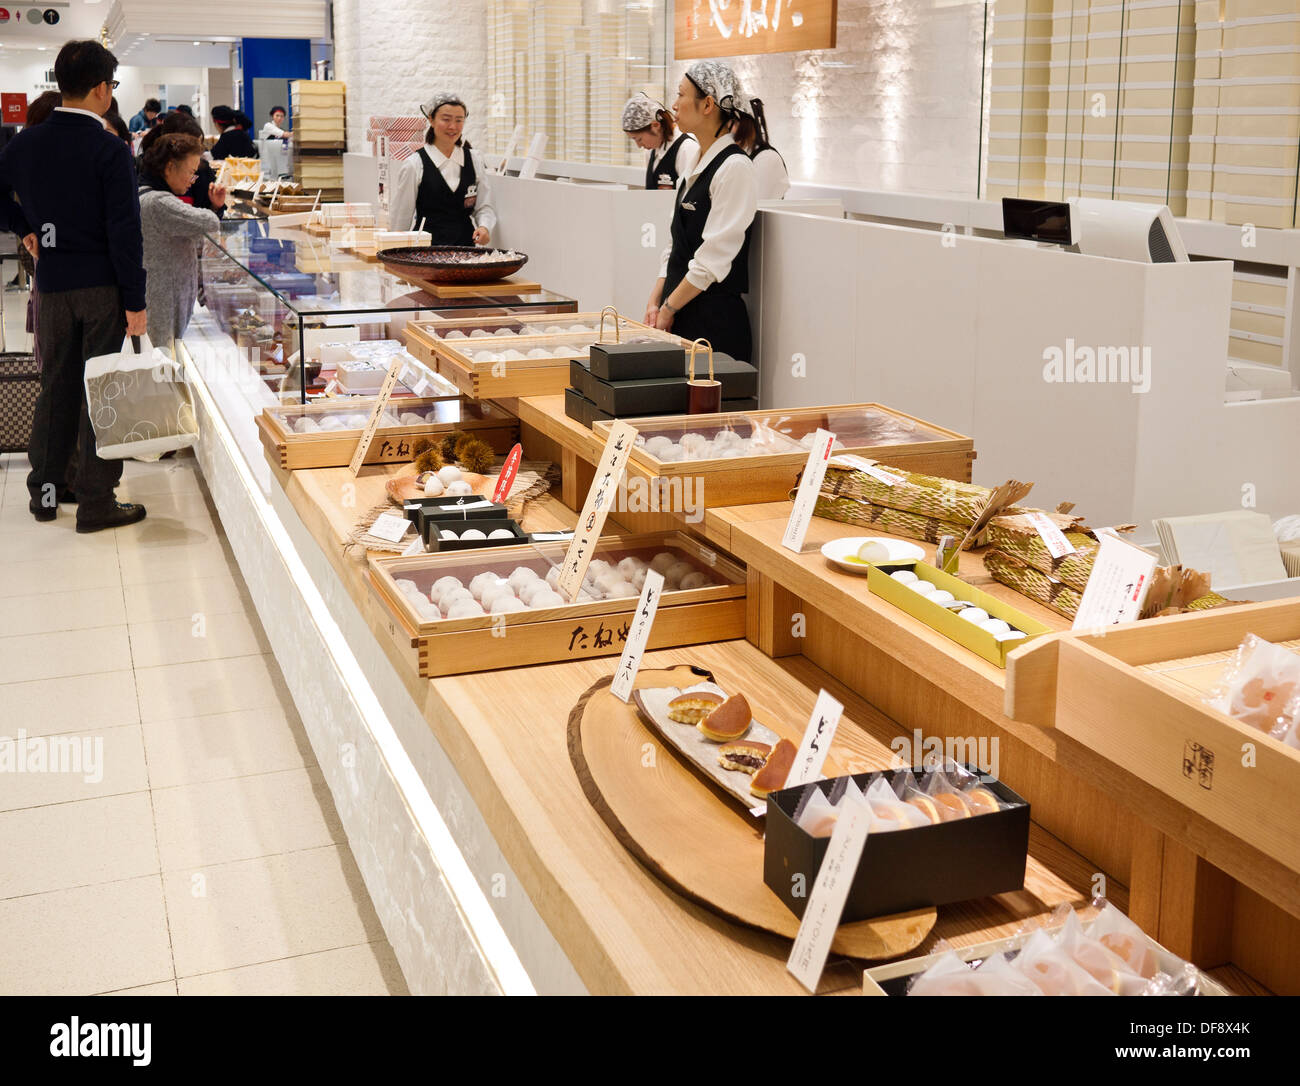 Giapponese i dolciumi e prodotti alimentari in vendita presso il Centro Commerciale Sogo seminterrato Area dello Shopping (Depachika) con Food Hall in Giappone. Foto Stock